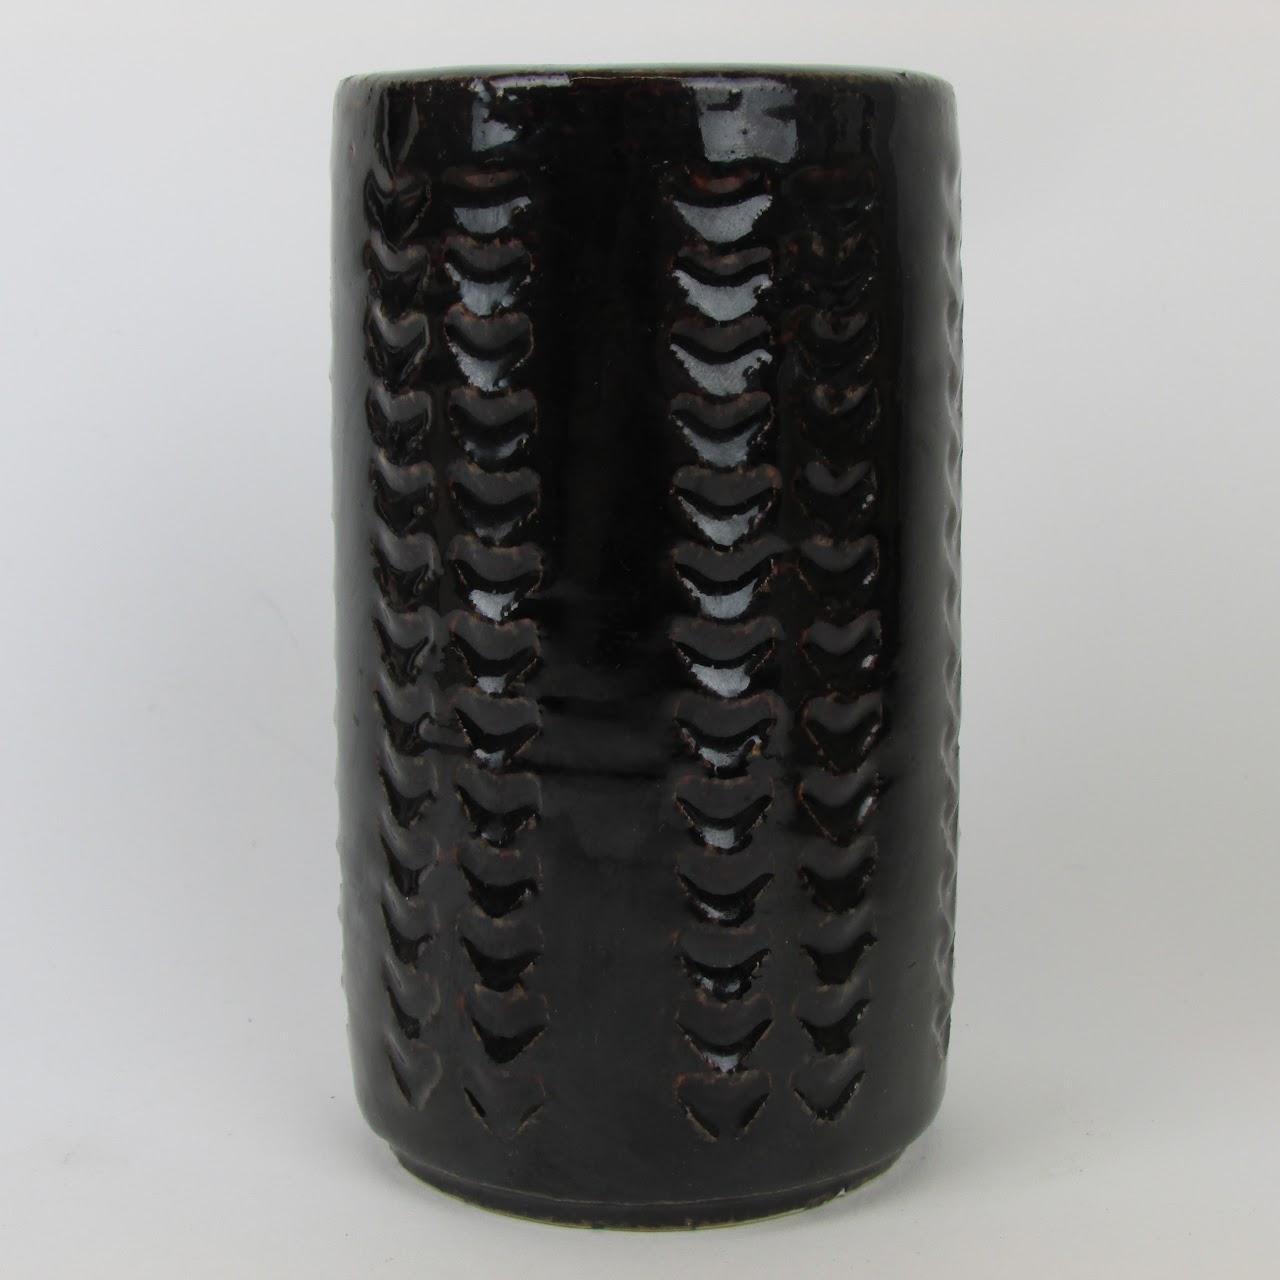 Palshus Denmark Ceramic Vase